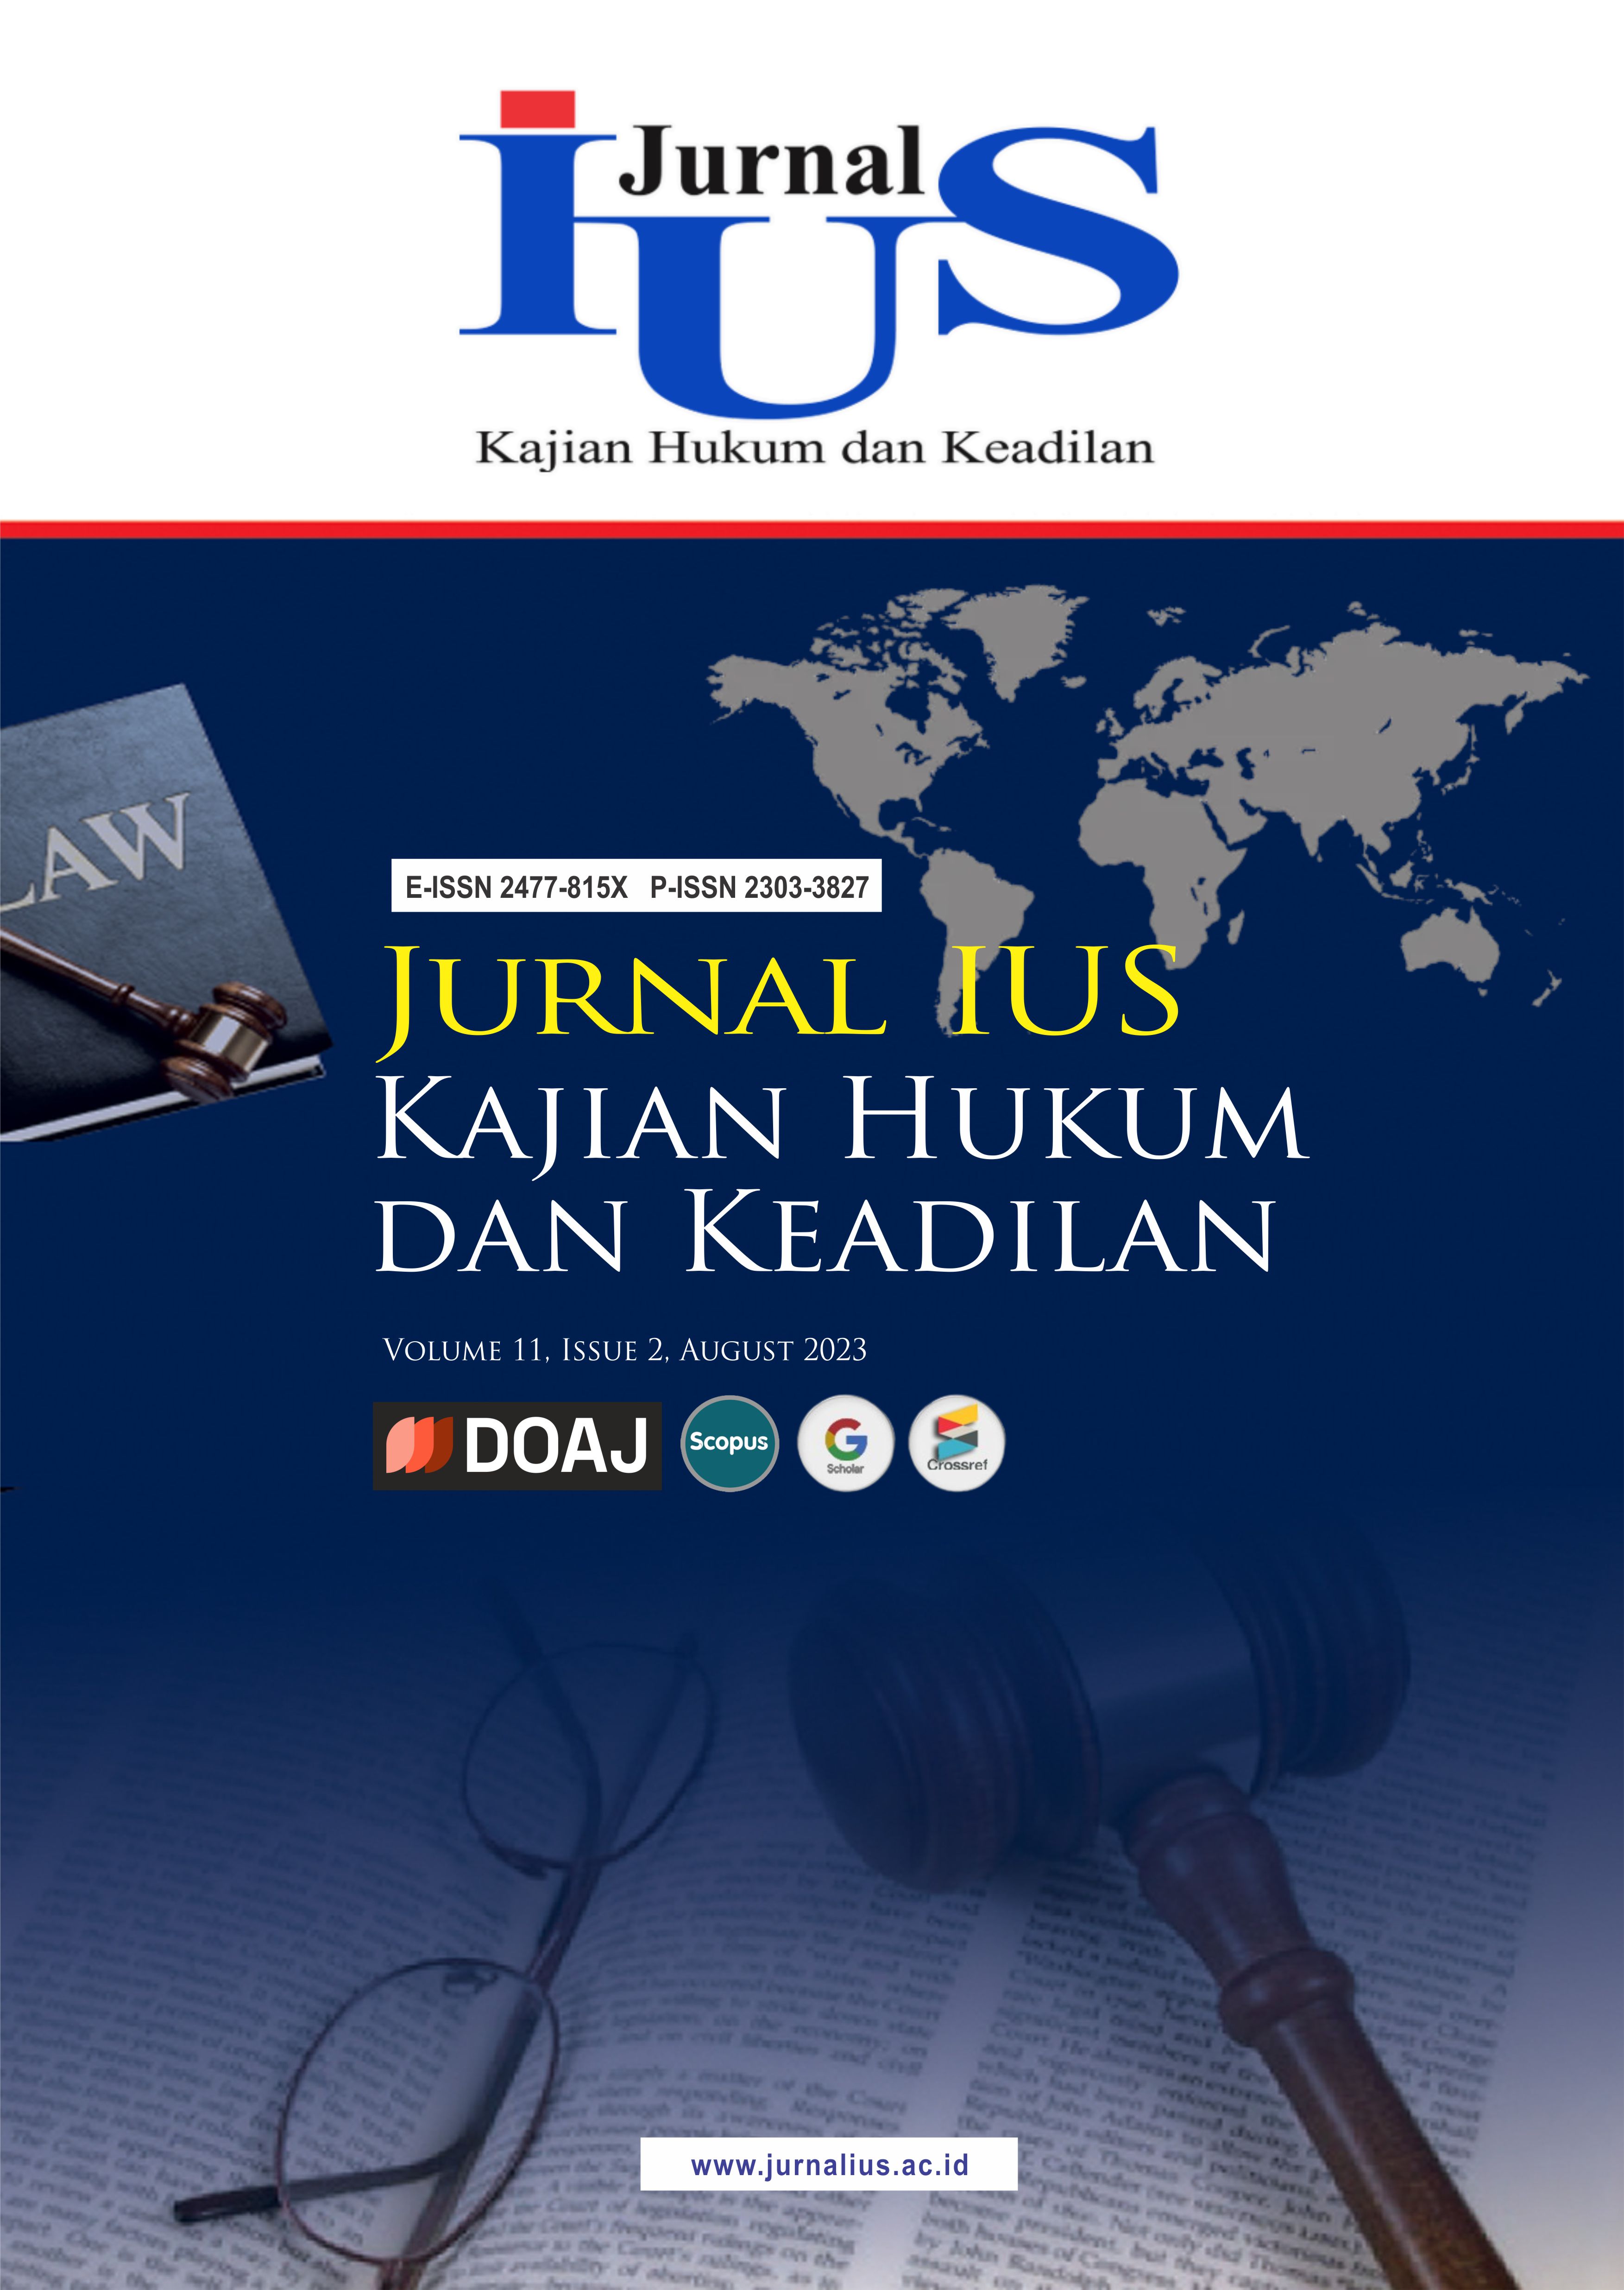 					View Vol. 11 No. 2: August 2023 : Jurnal IUS Kajian Hukum dan Keadilan
				